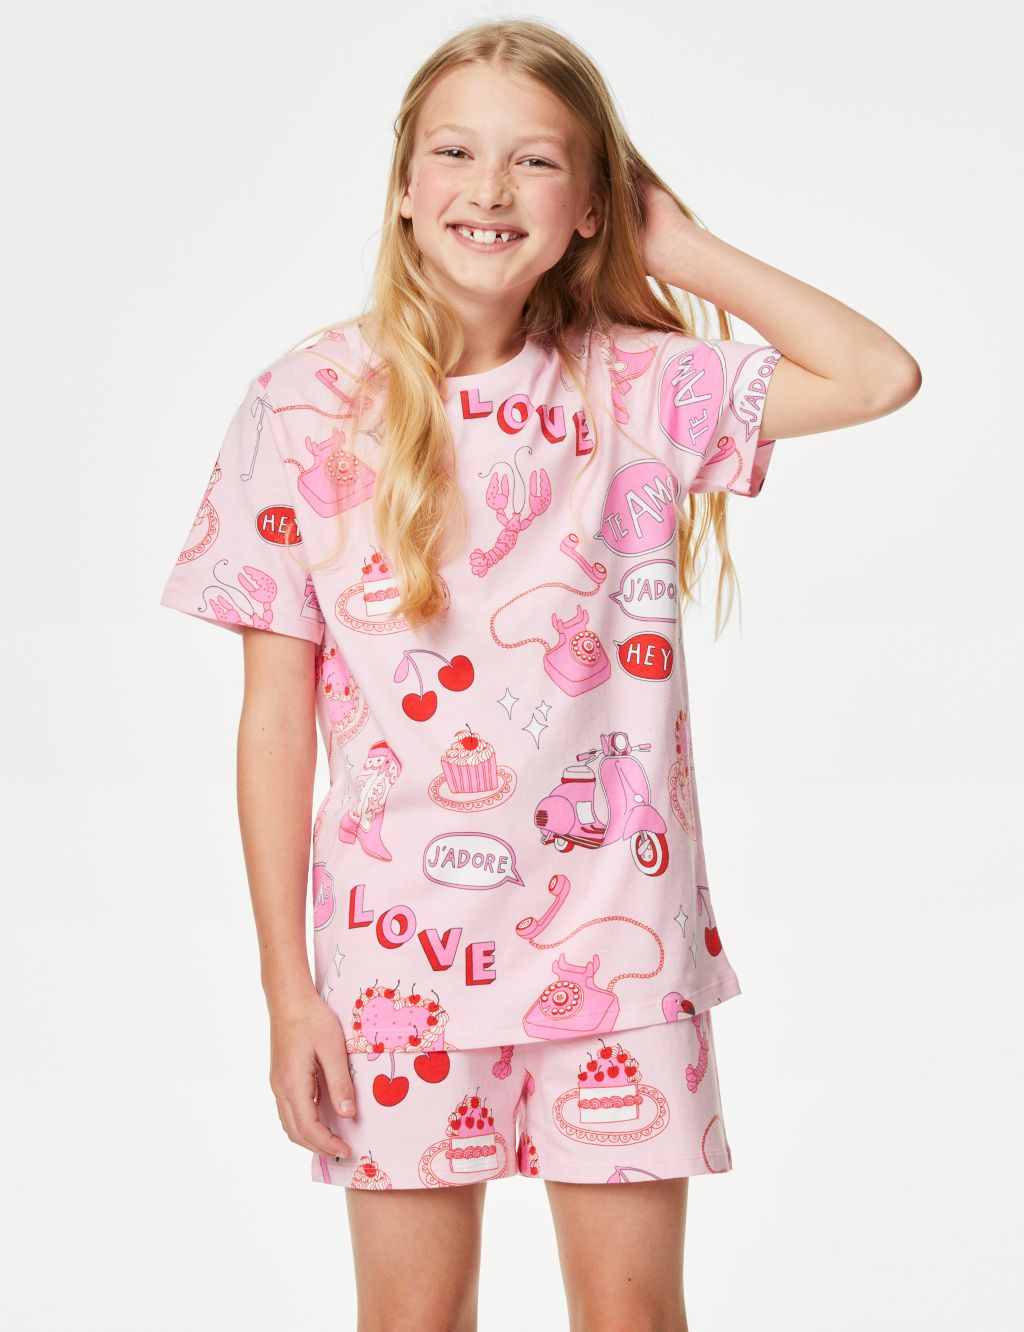 Pure Cotton Love Print Pyjamas (7-14 Yrs)